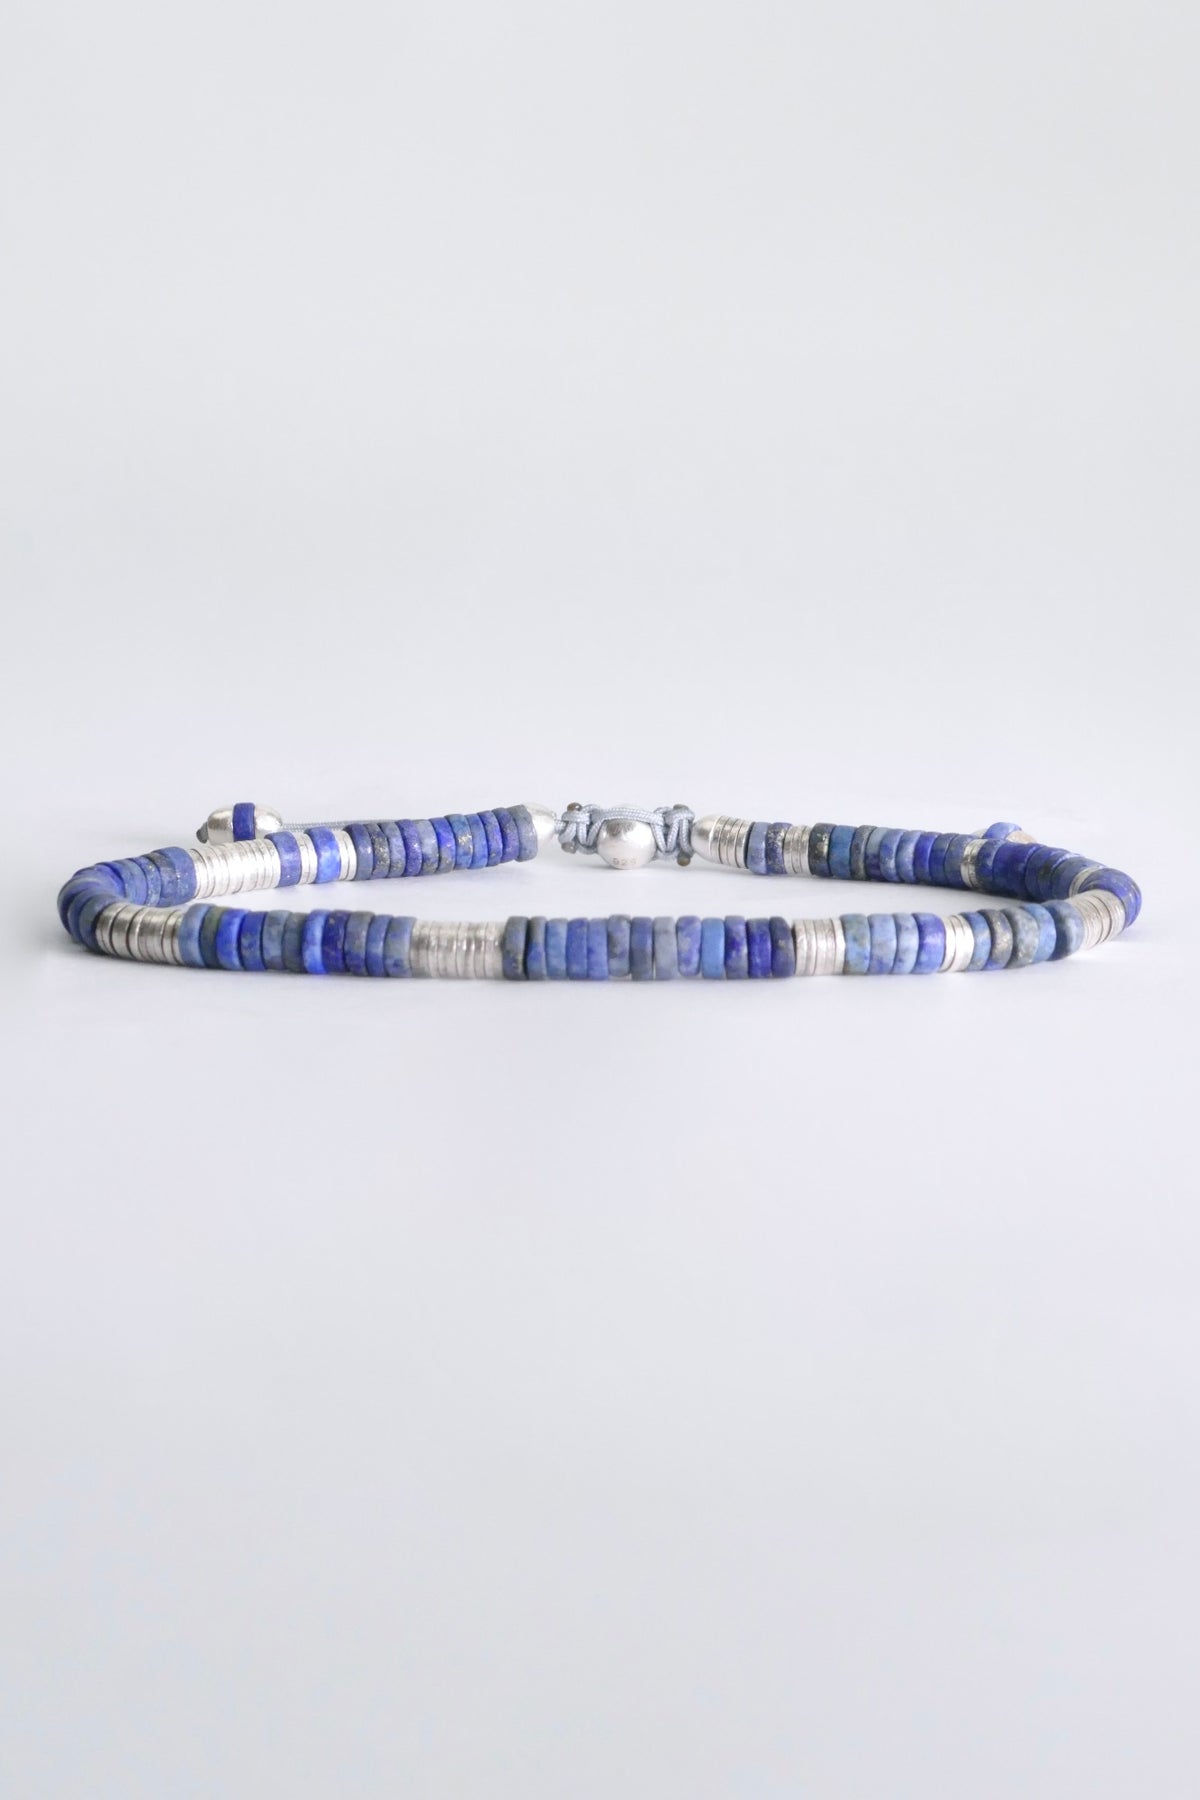 M.Cohen by MAOR Lazuli Lapis Bracelet - Blue